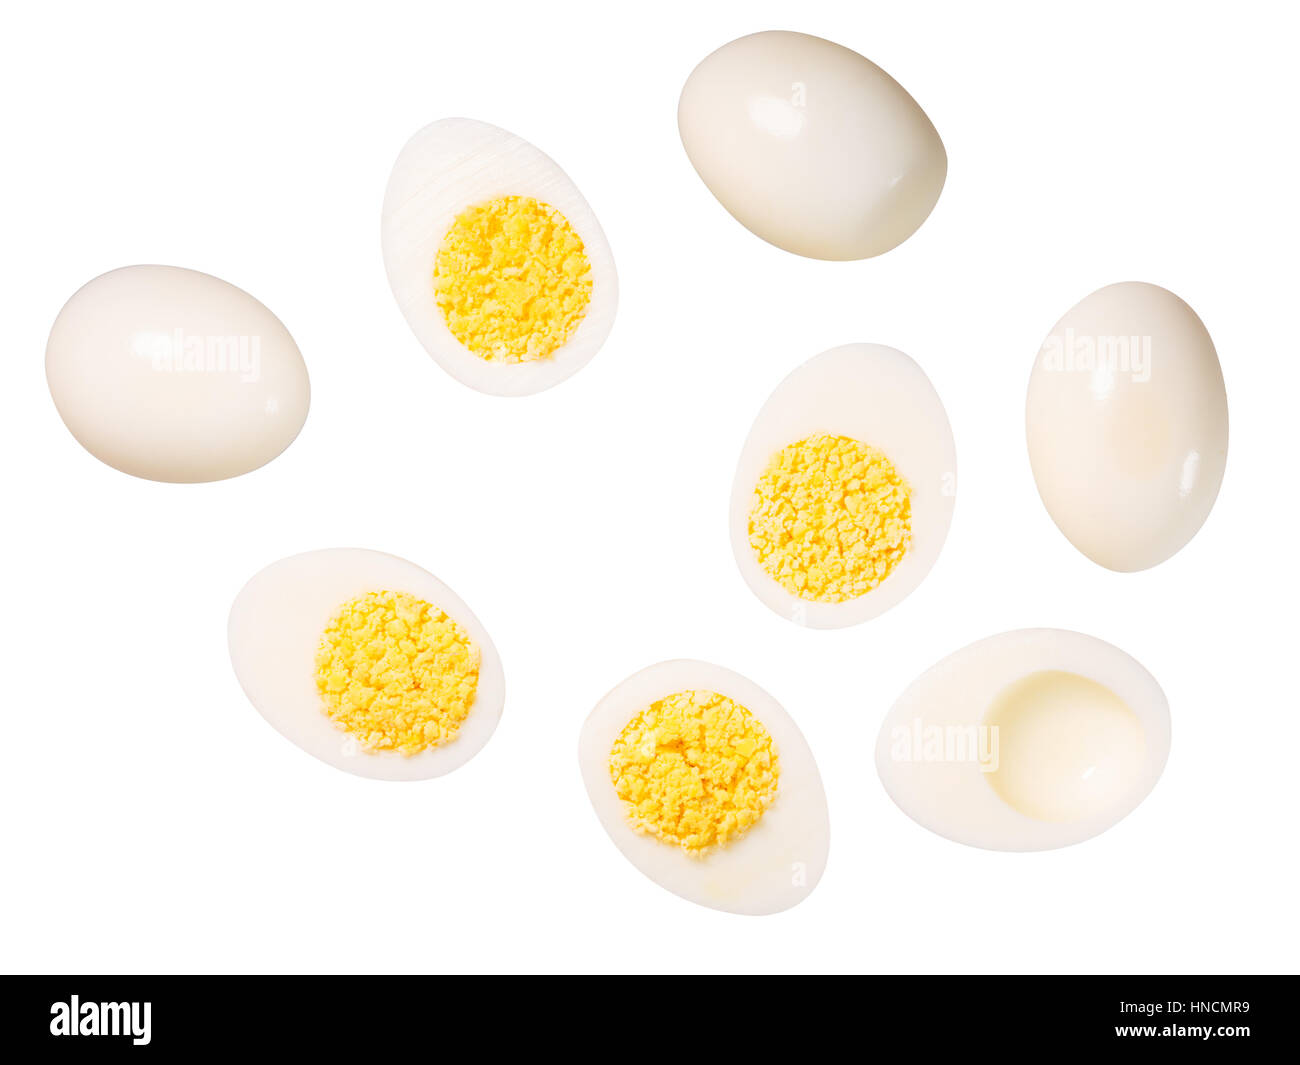 Mitades de huevos de pollo cocido, las yemas es aproximadamente con estilo. Trazados de recorte, vista superior, shadowless Foto de stock